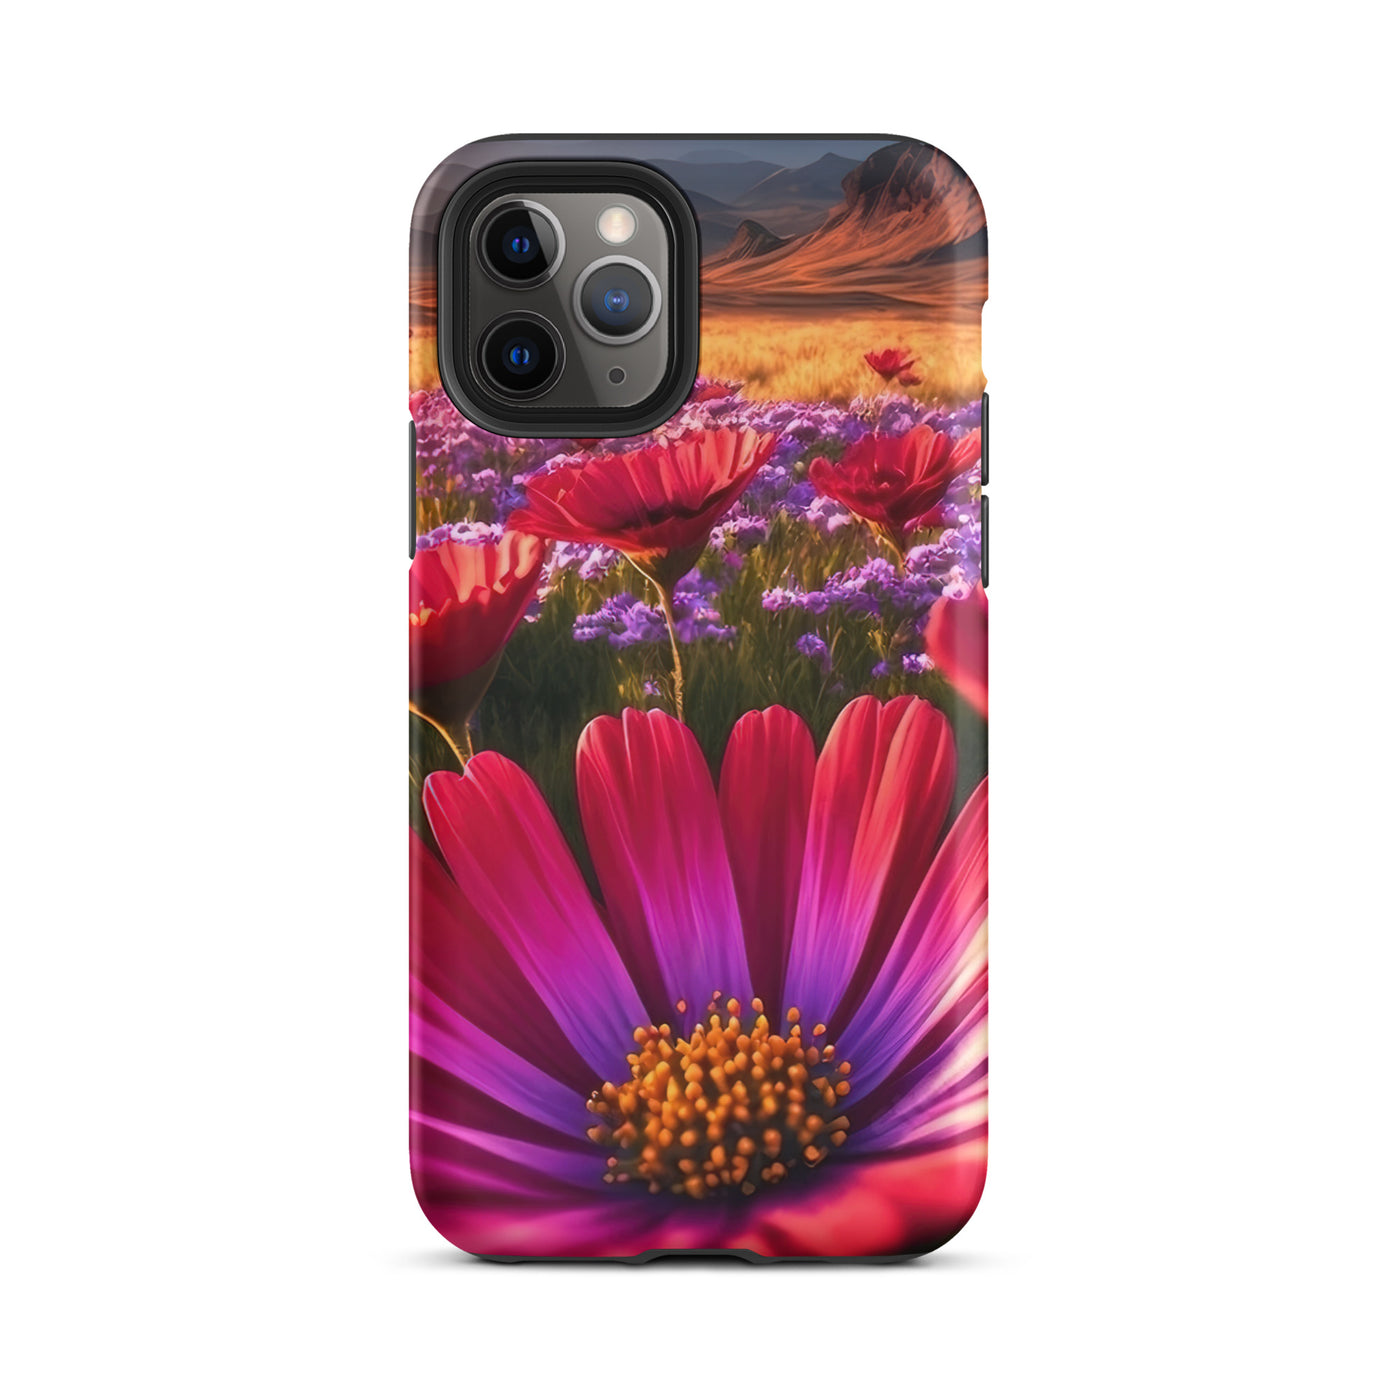 Wünderschöne Blumen und Berge im Hintergrund - iPhone Schutzhülle (robust) berge xxx iPhone 11 Pro